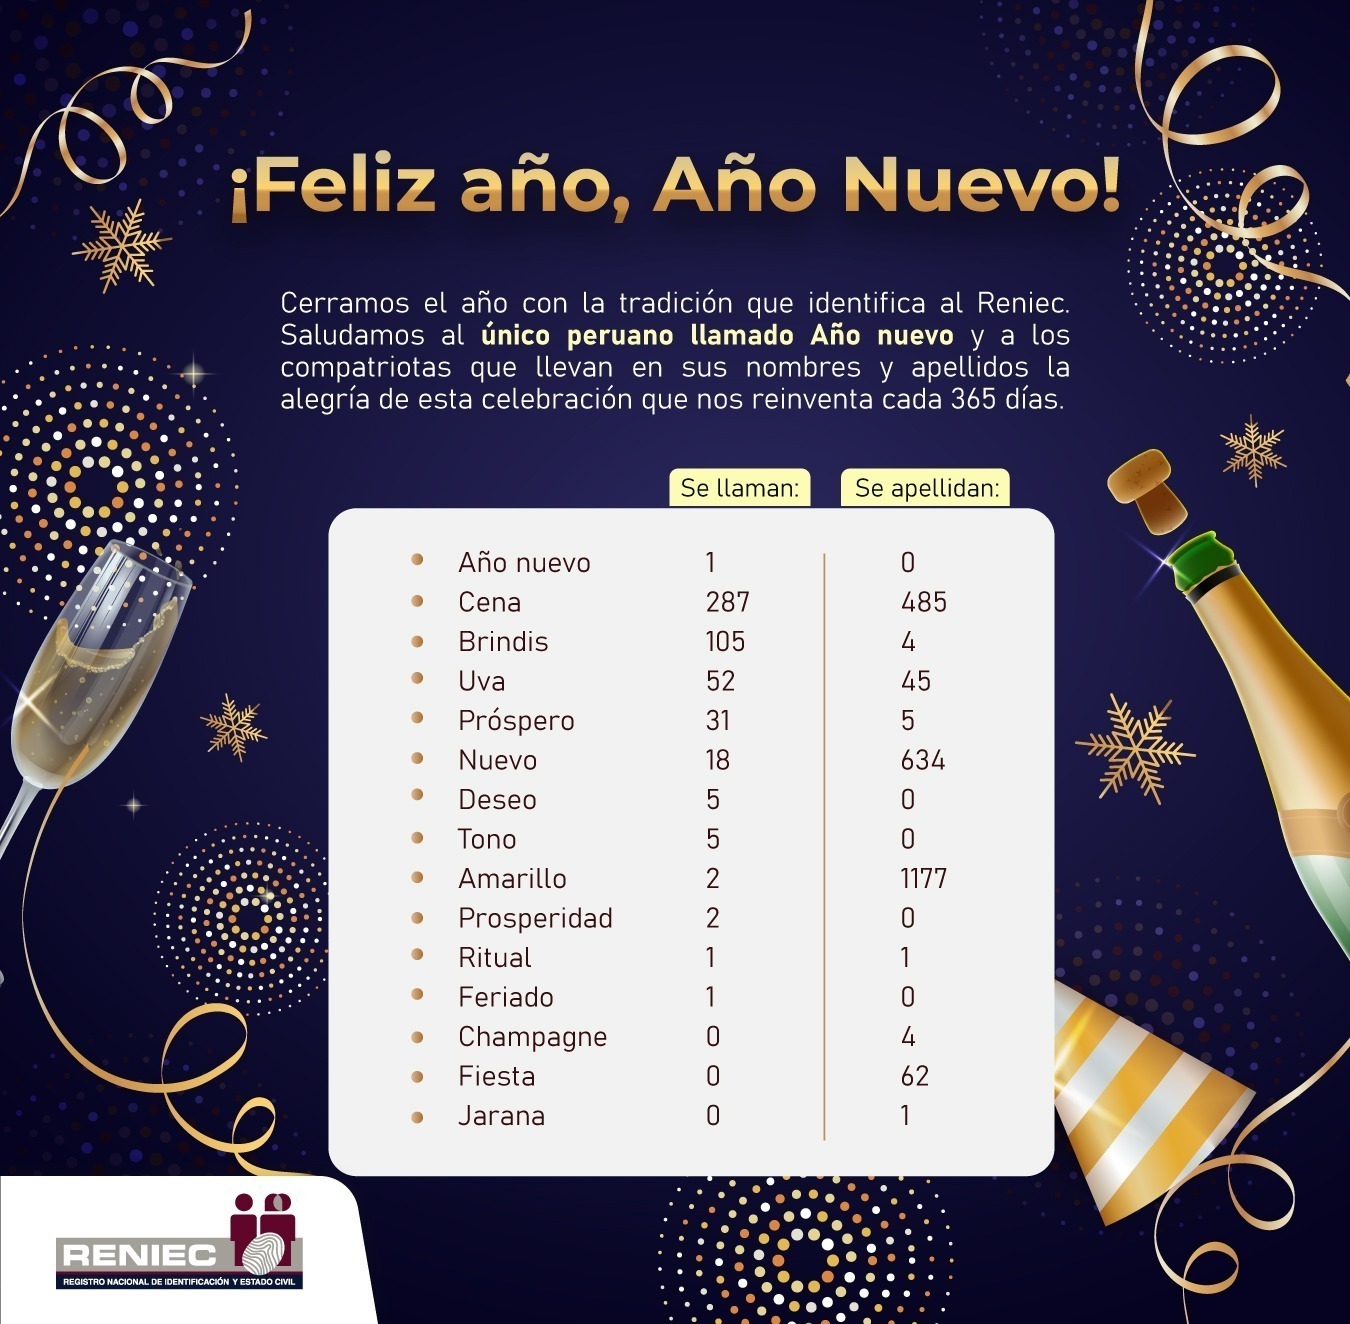 Tono, Feriado, Cena, entre otros: Nombres de peruanos inspirados en fiestas por Año Nuevo